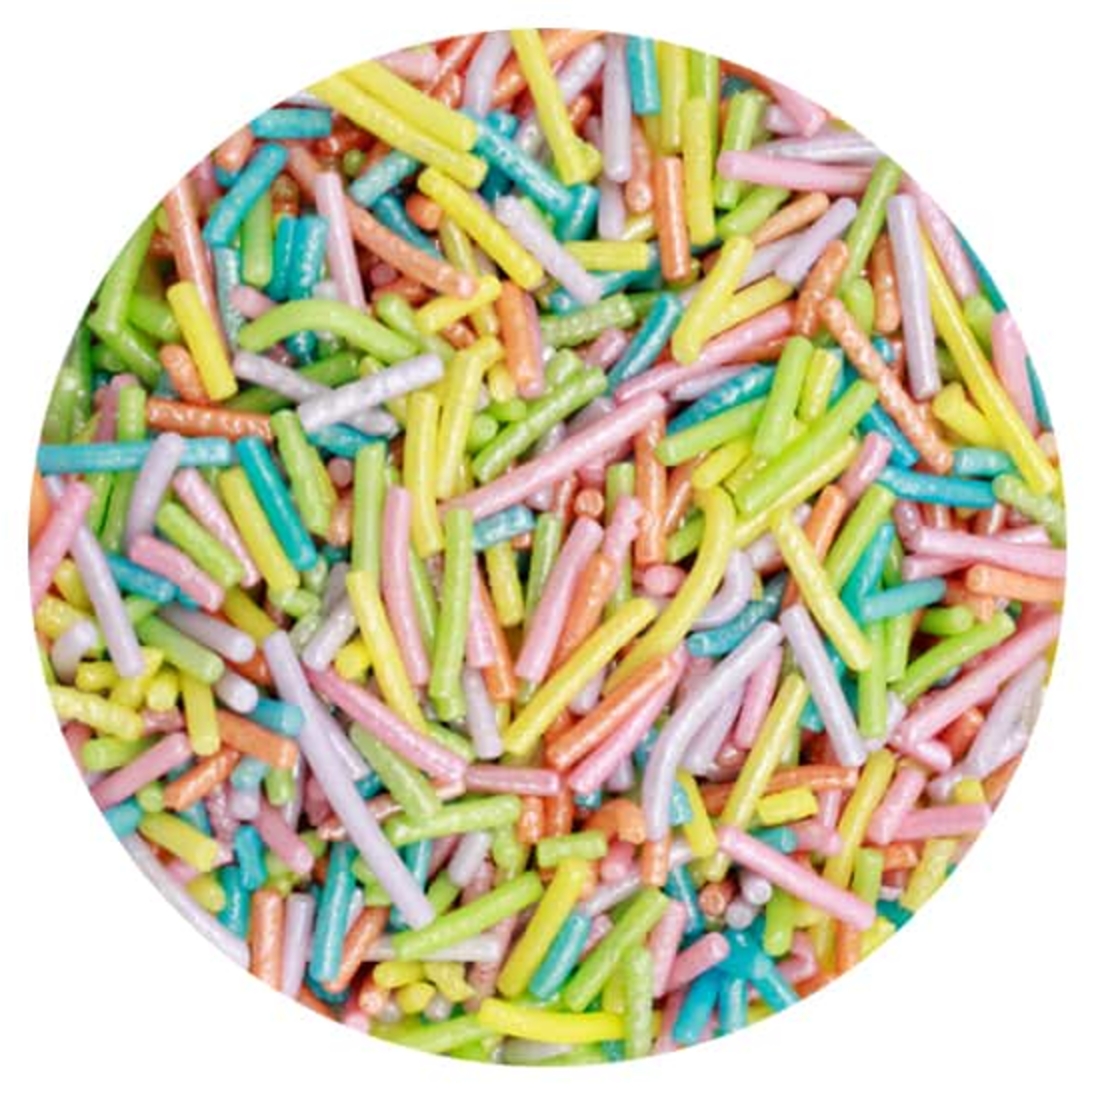 סוכריות איטריות ארוכות פסטל צבעוני 65 גרם